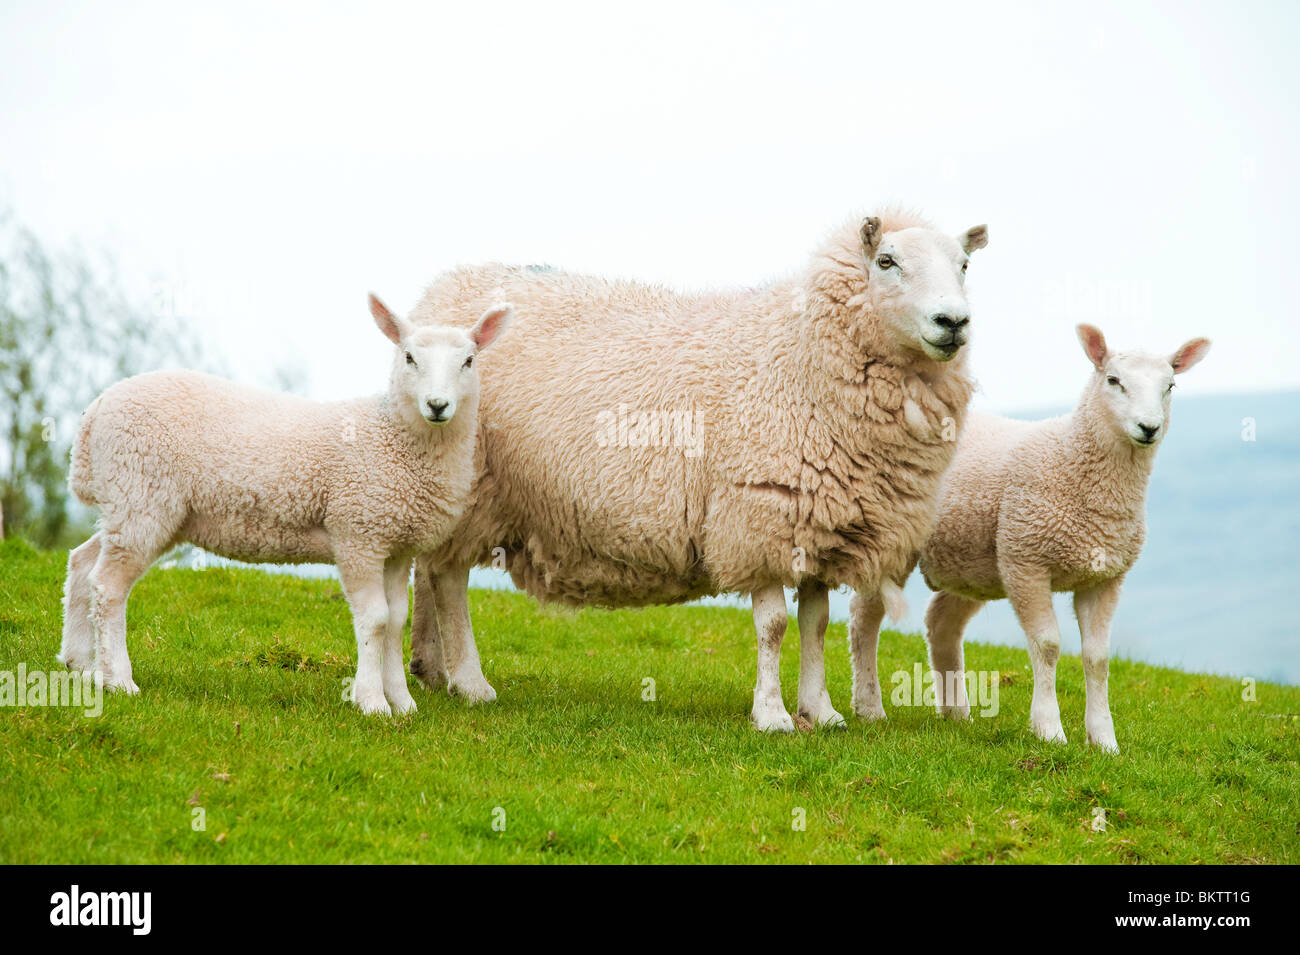 Madre OVEJA oveja con dos corderos lindo Foto de stock